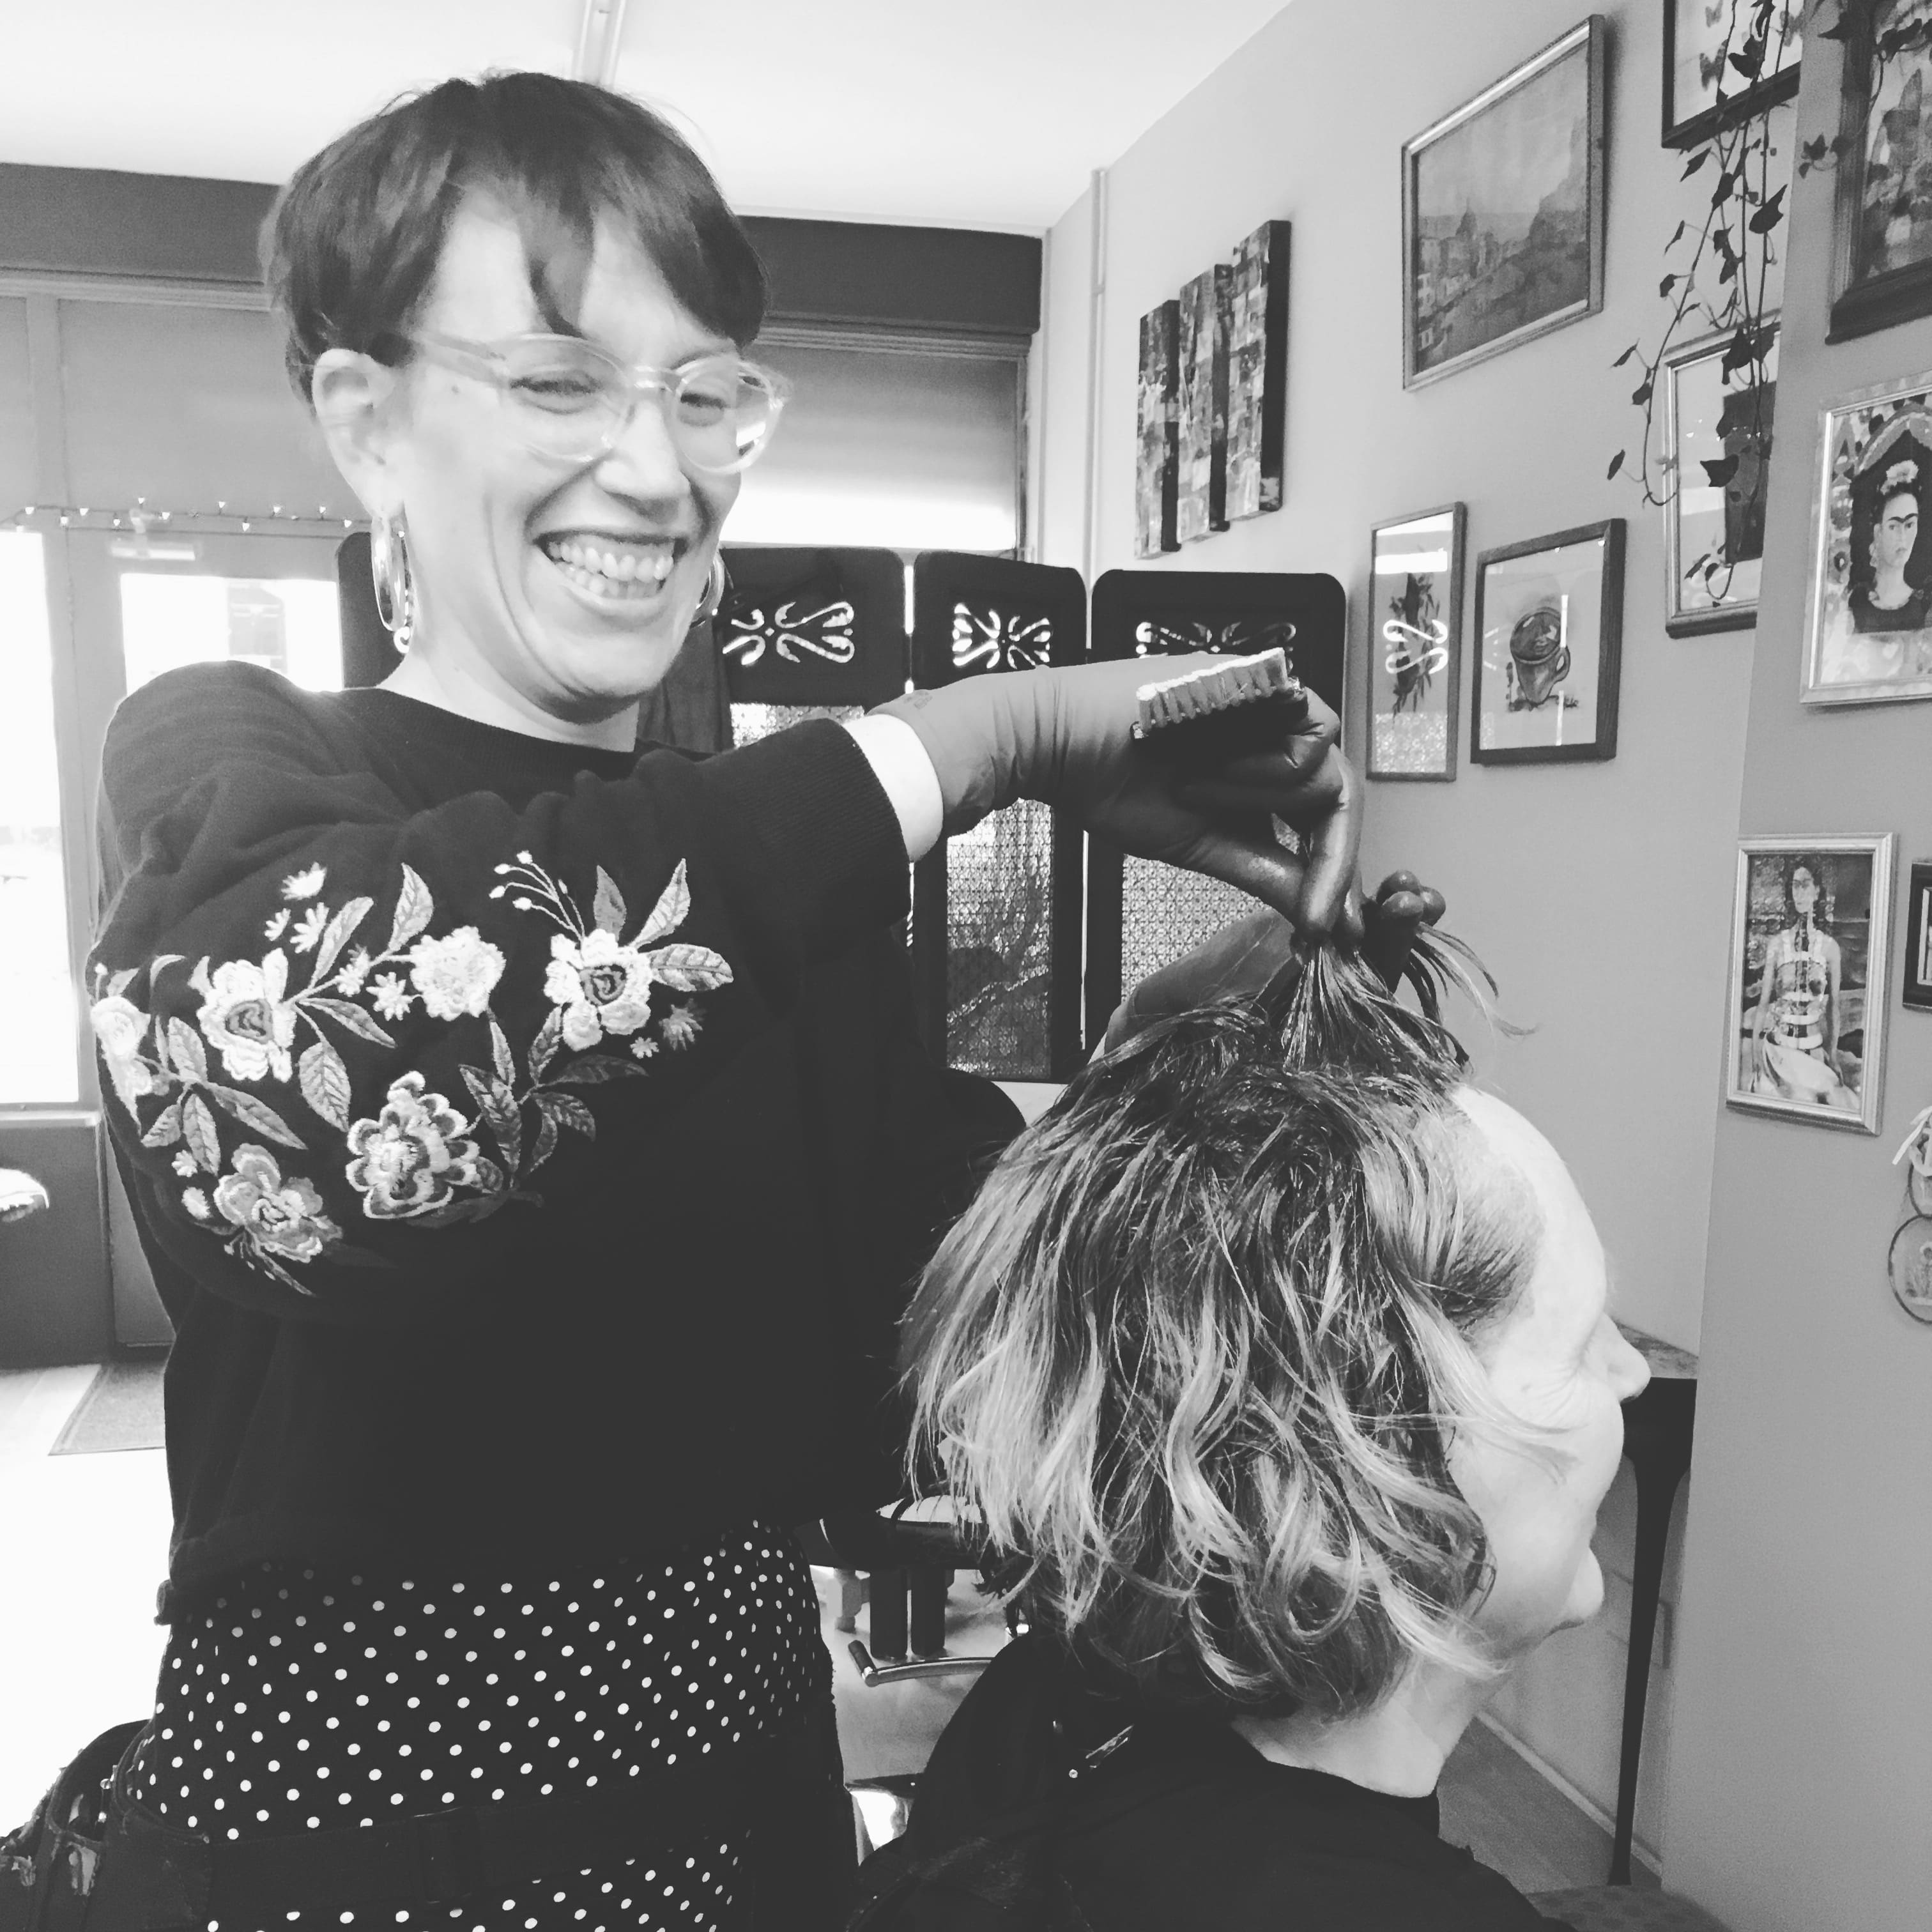 A woman cutting hair